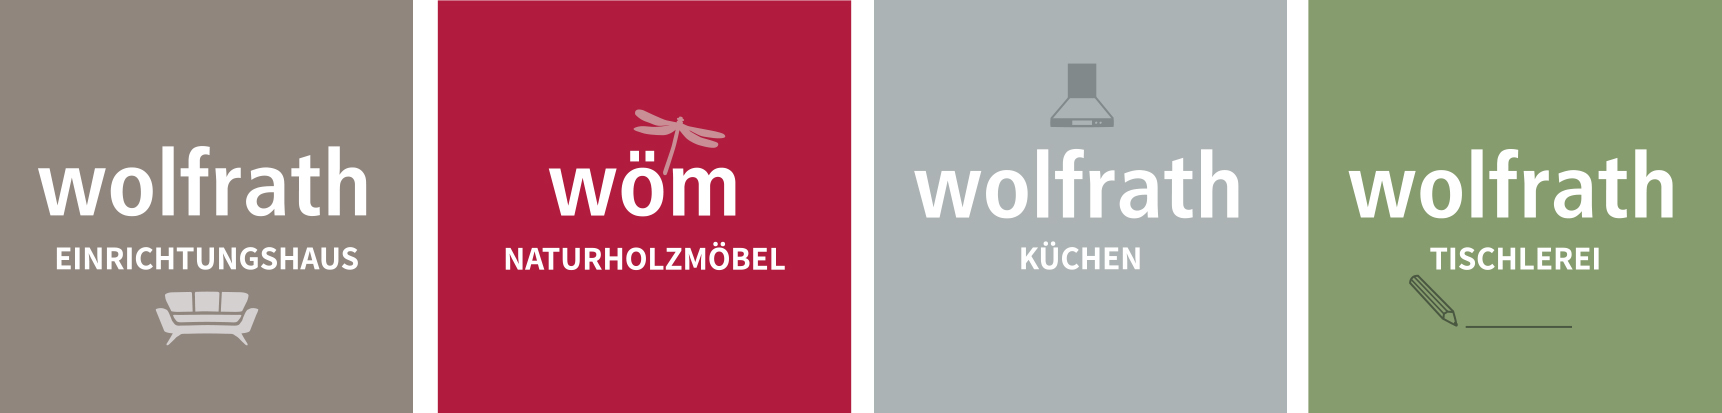 Wo-m-Wolfrath-Tischlerei-4-Logos.jpg